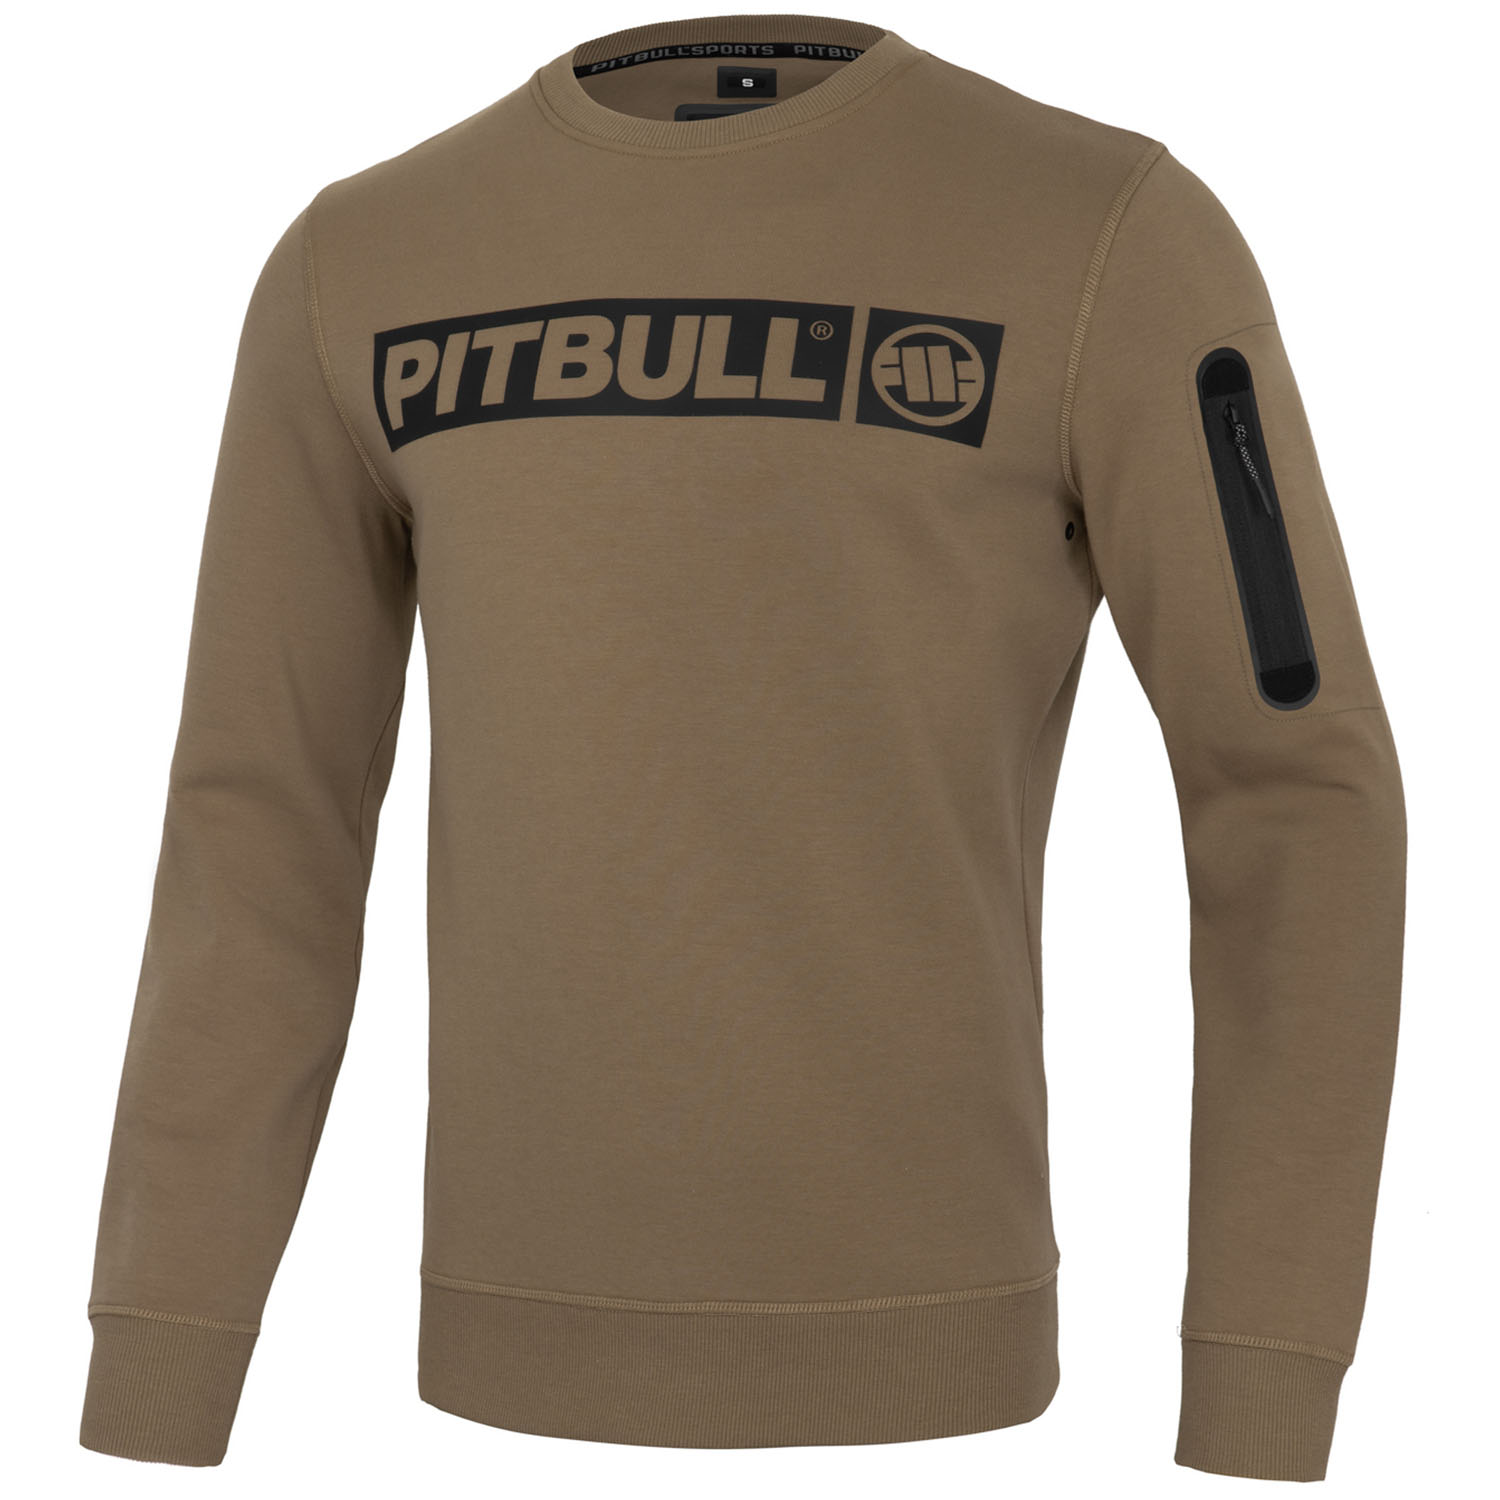 Pit Bull West Coast Sweatshirt, Beyer, brown